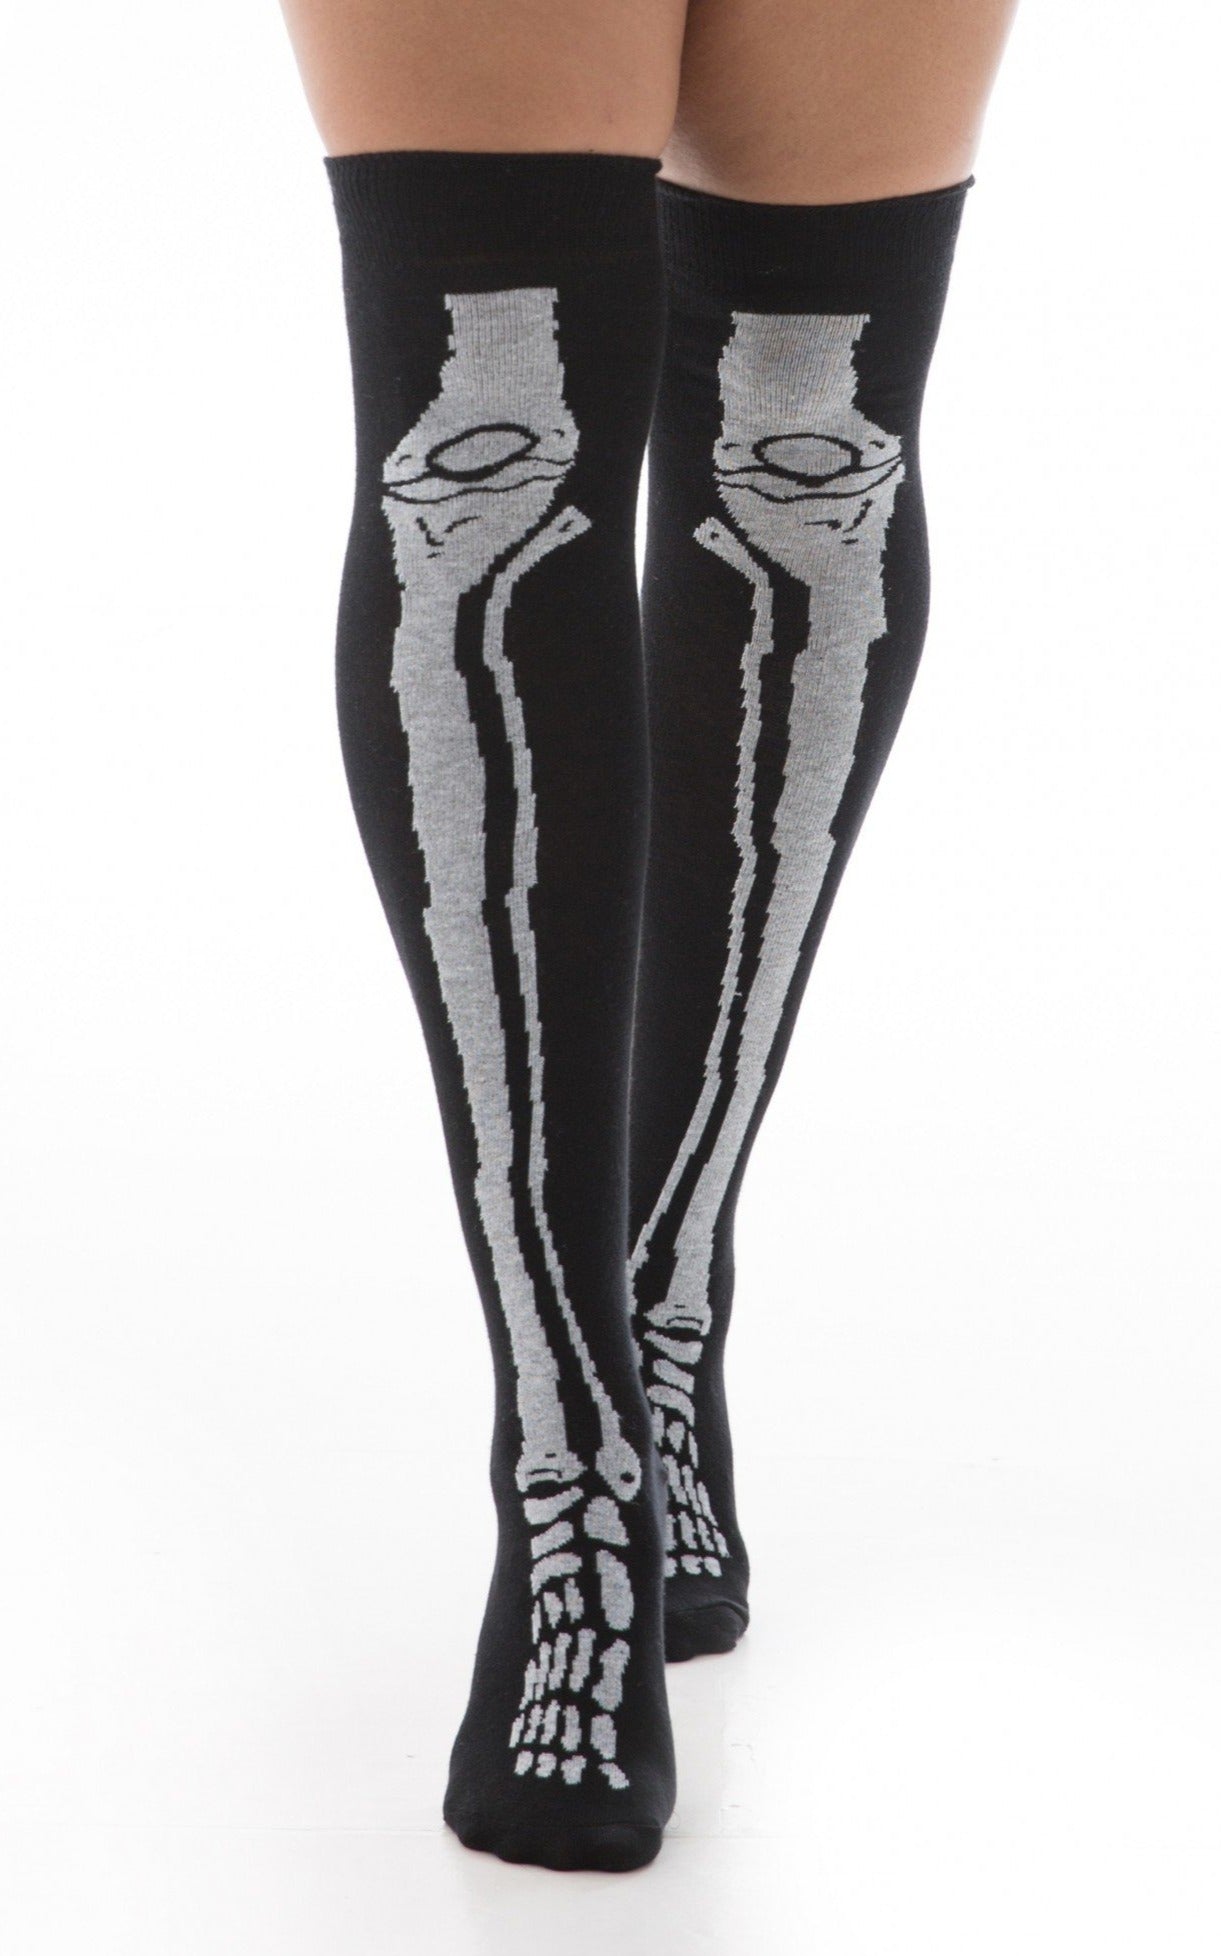 Pamela Mann Skeleton Bones Over The Knee Socks - black cotton over-knee socks with white x-ray bones legs and feet pattern, perfect for Halloween